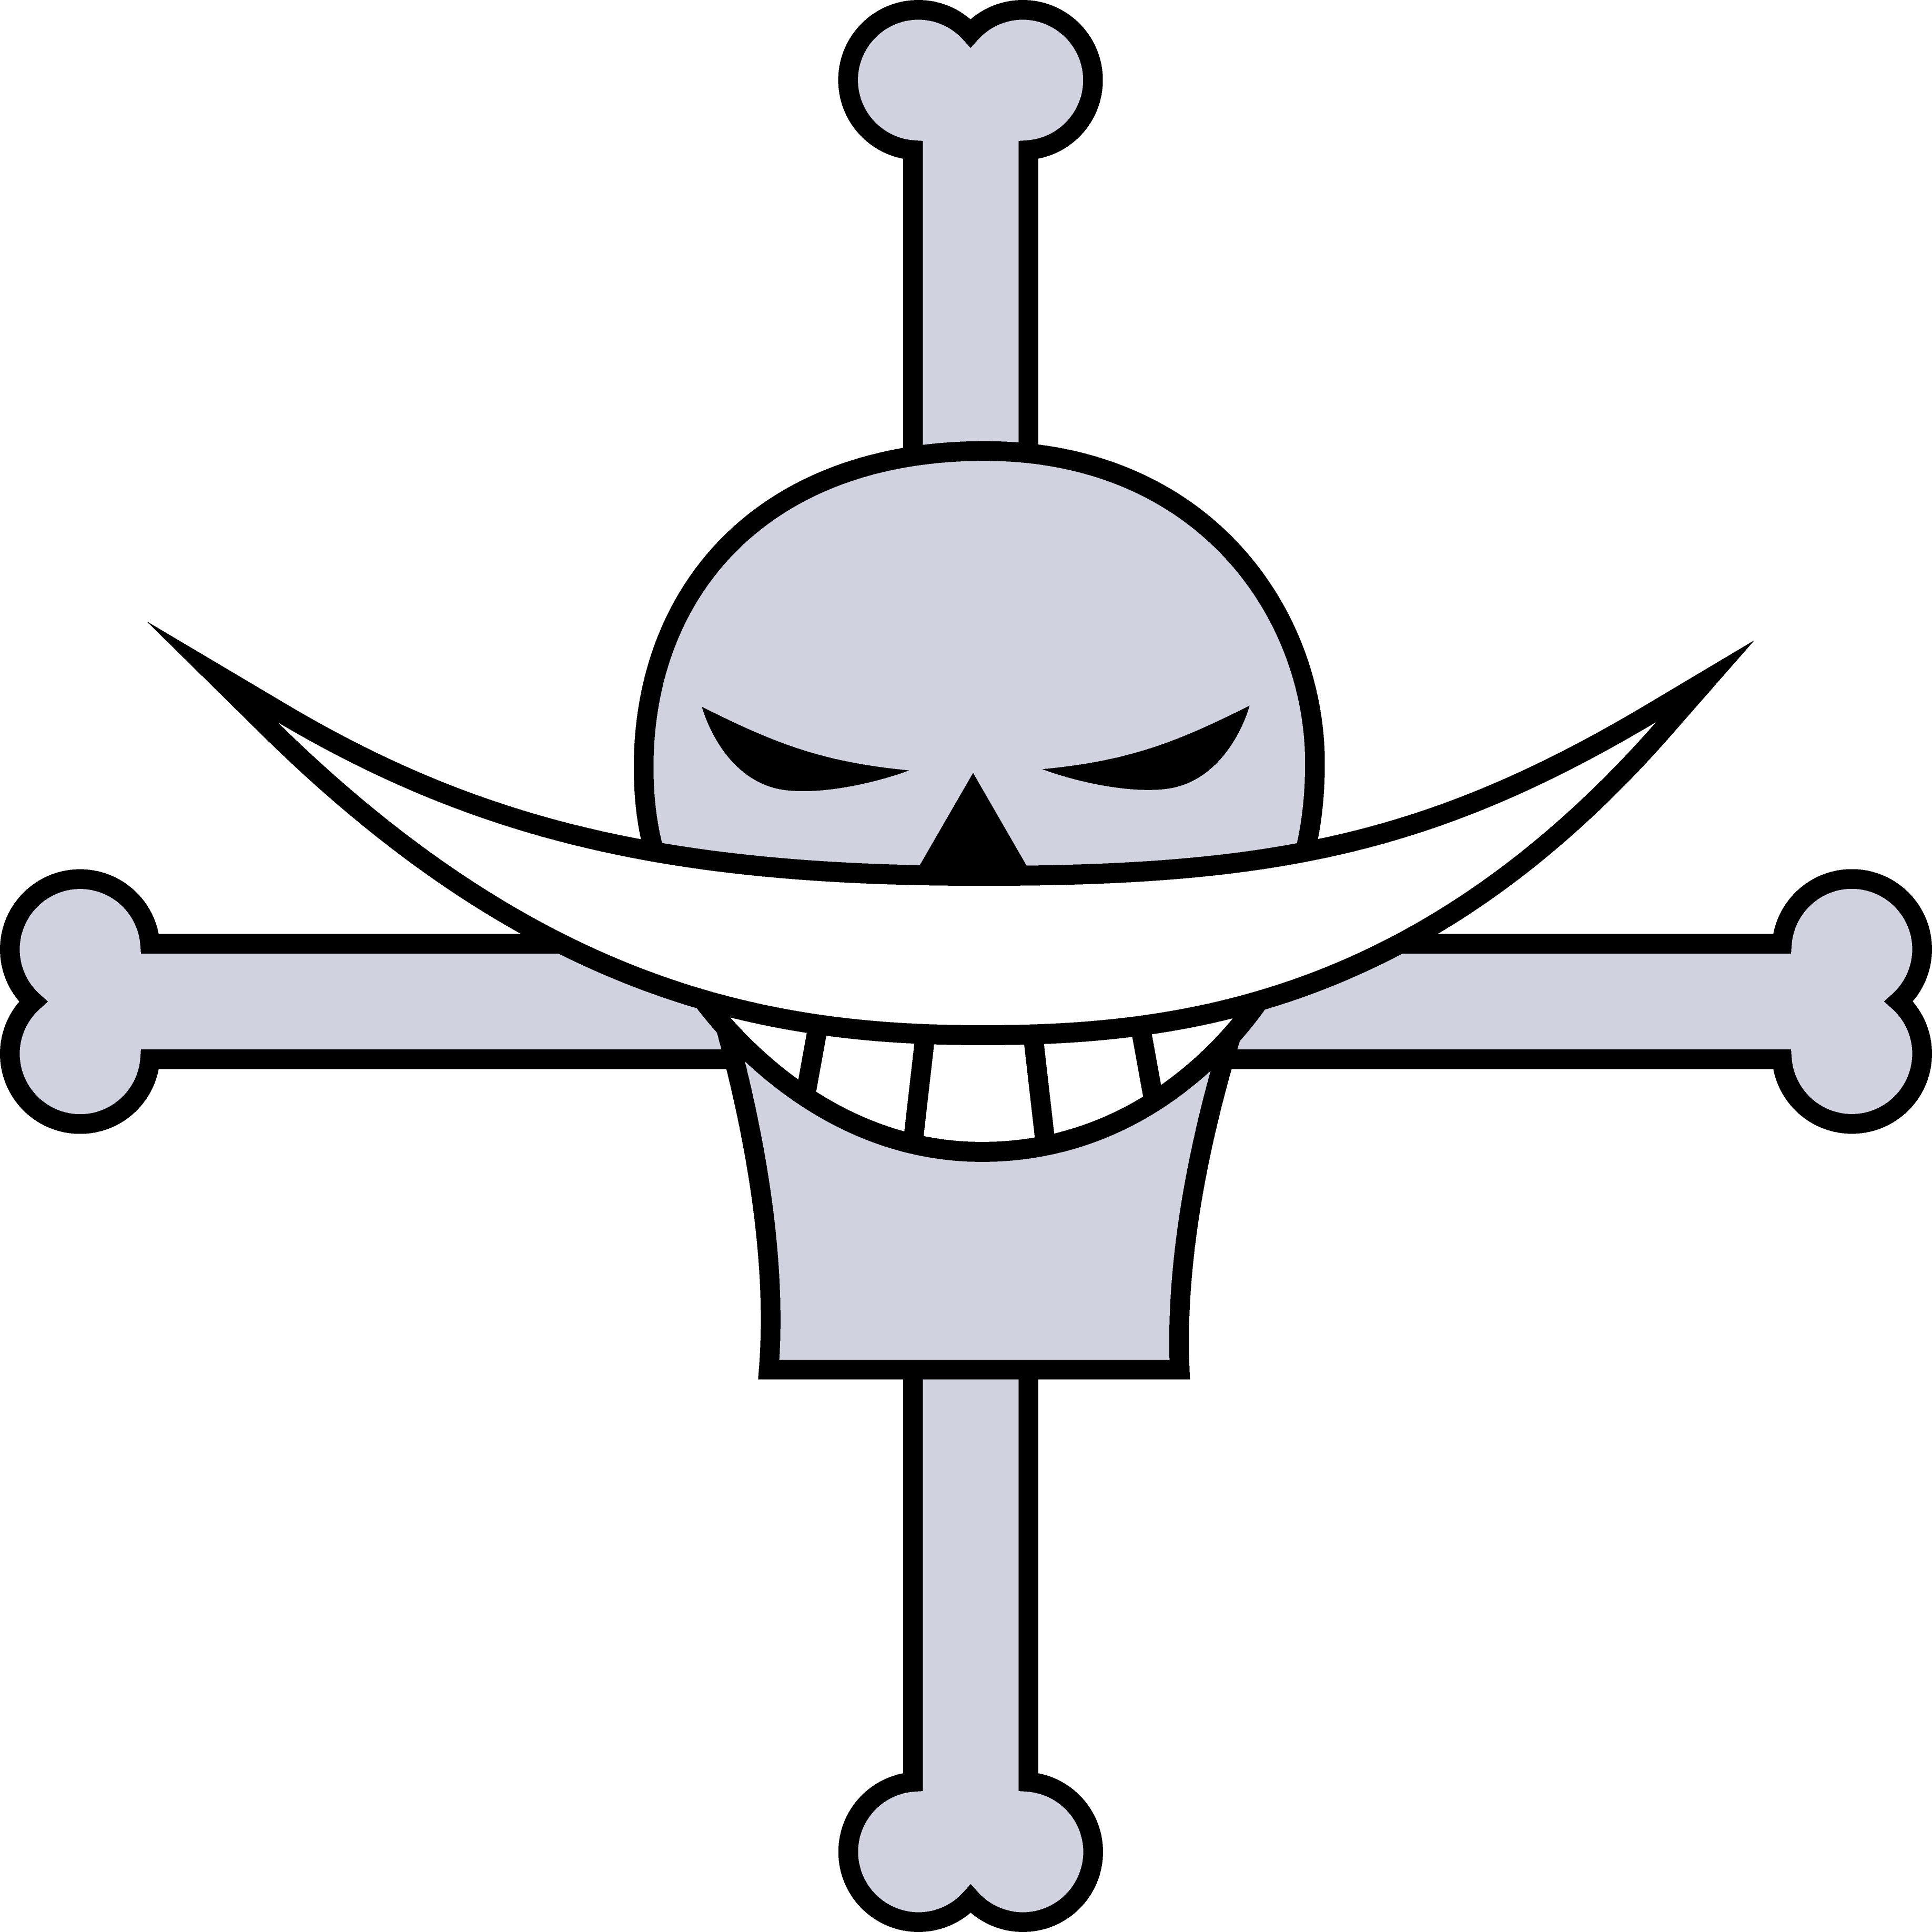 Флаг Белоуса Ван Пис. Флаг пиратов Белоуса. Пираты Белоуса Ван Пис флаг. Знак Белоуса Ван Пис.